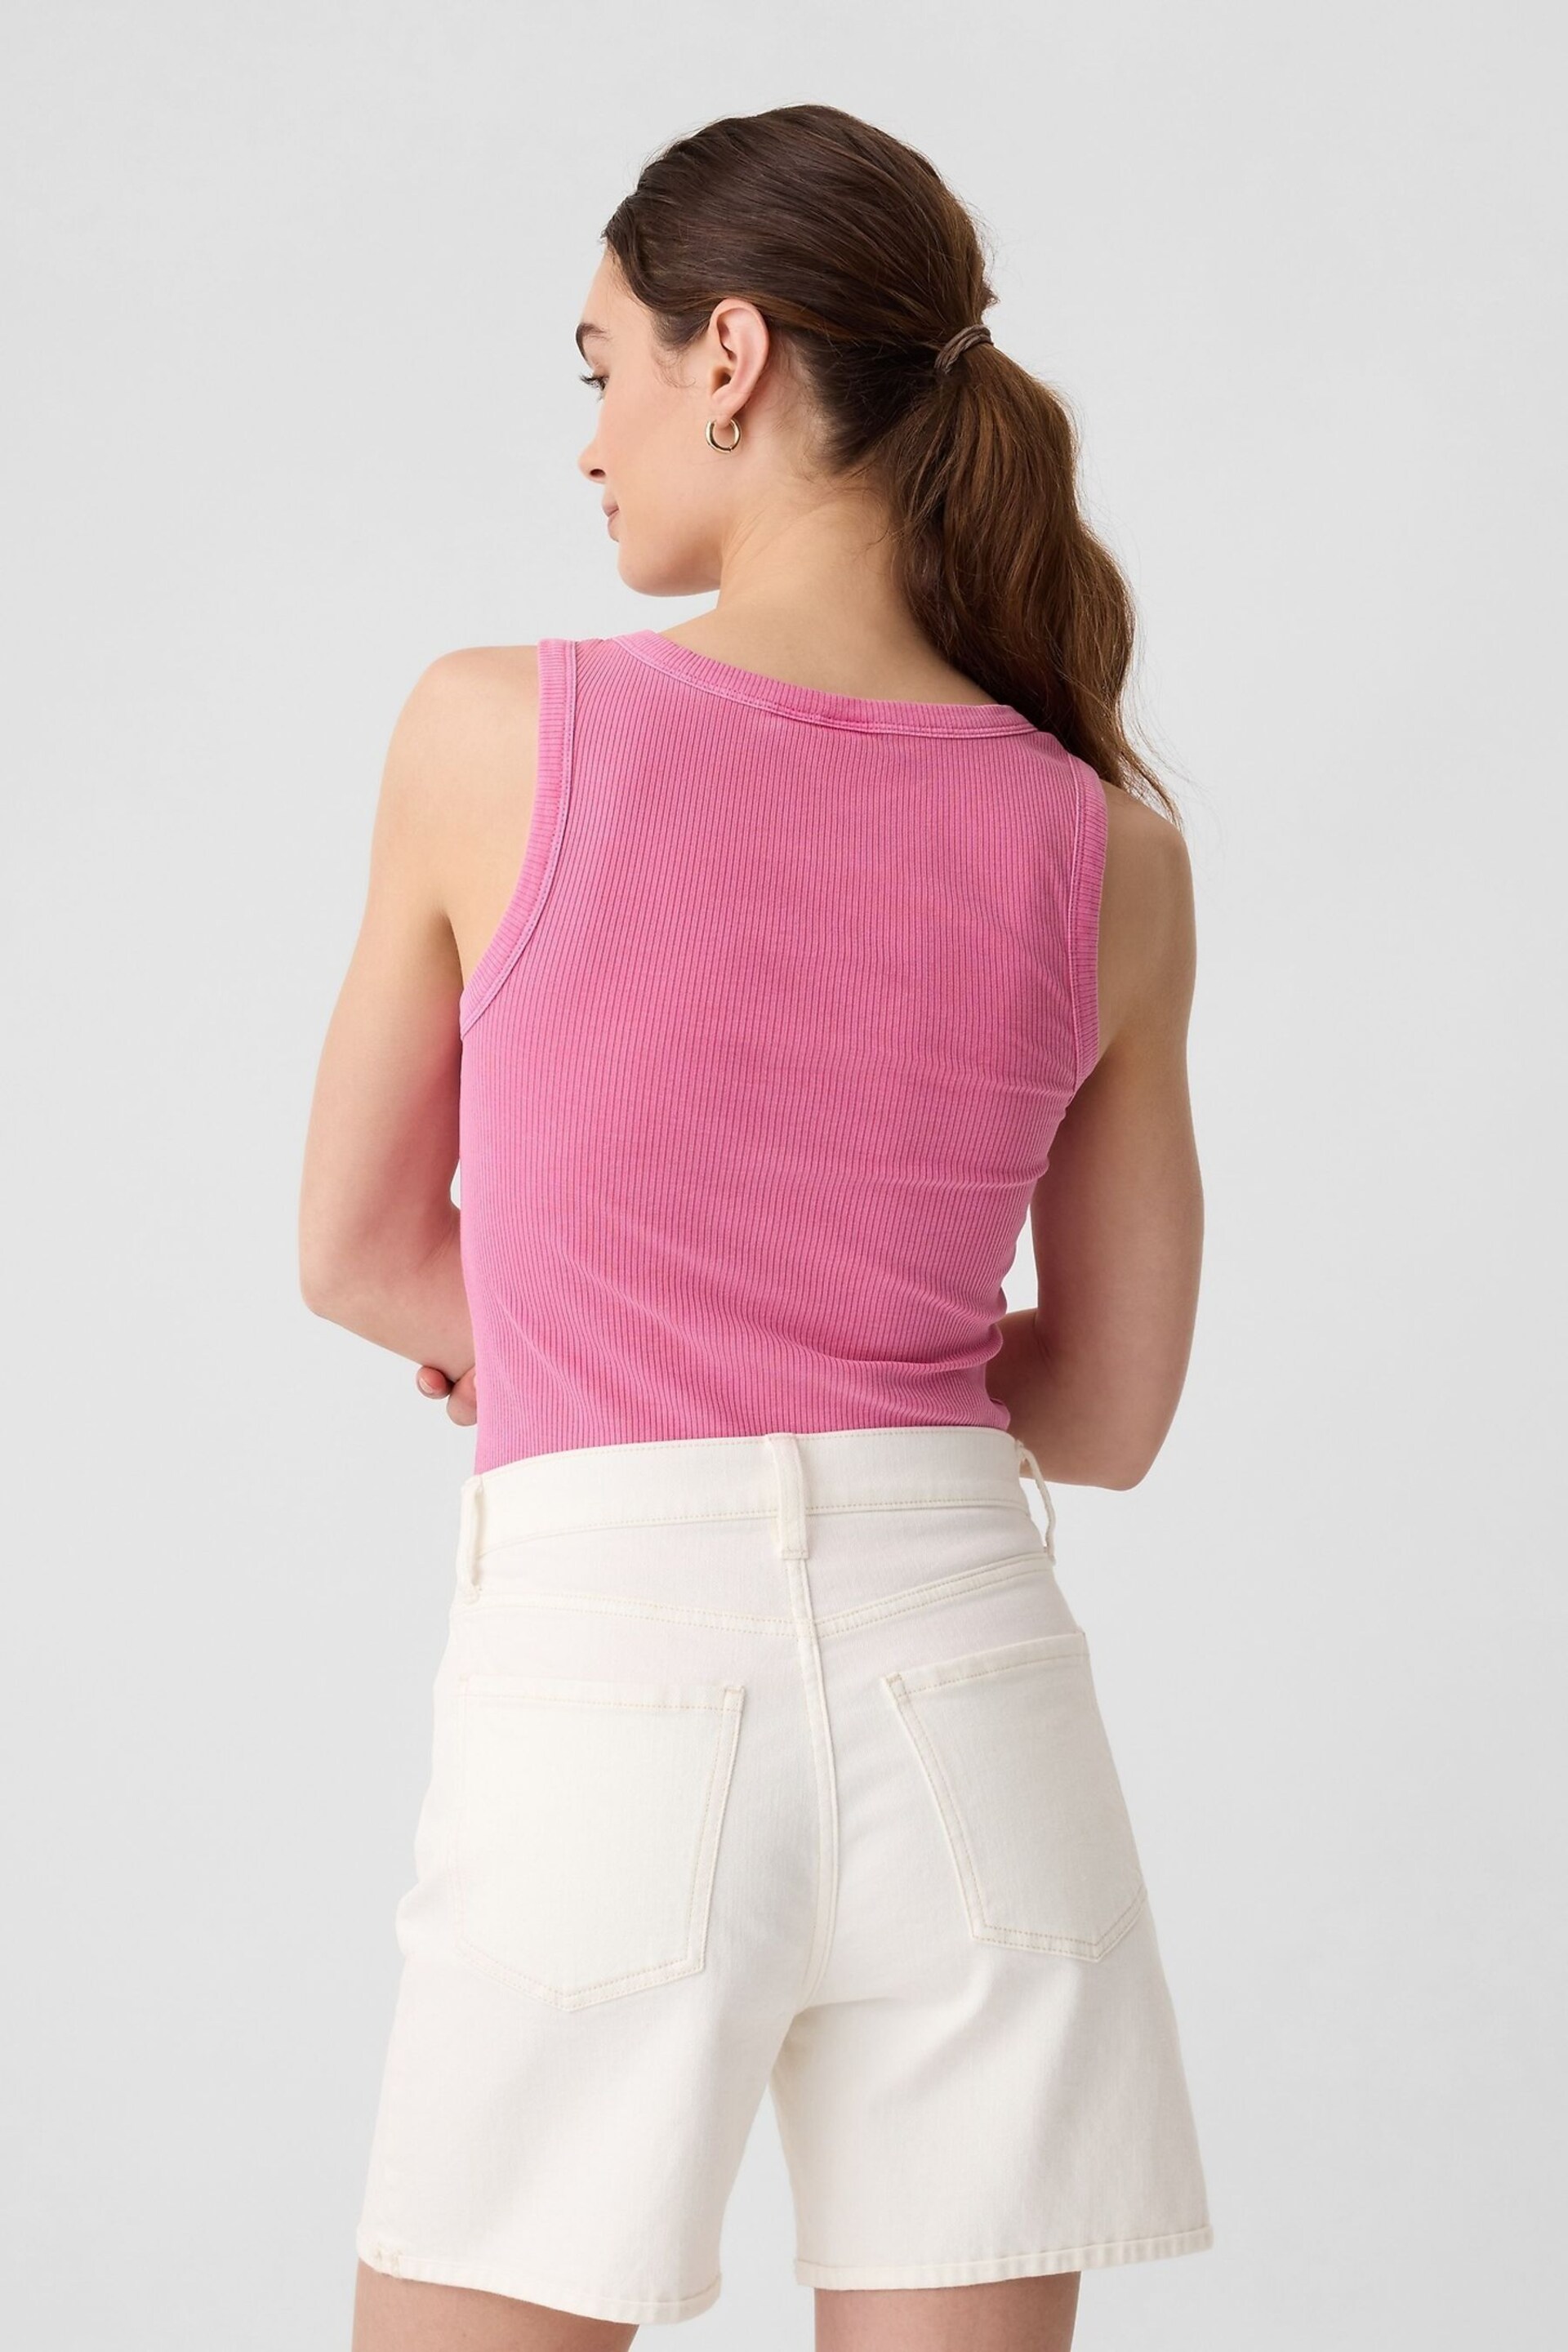 Gap Pink Soft Ribbed Vest Top - Image 2 of 5